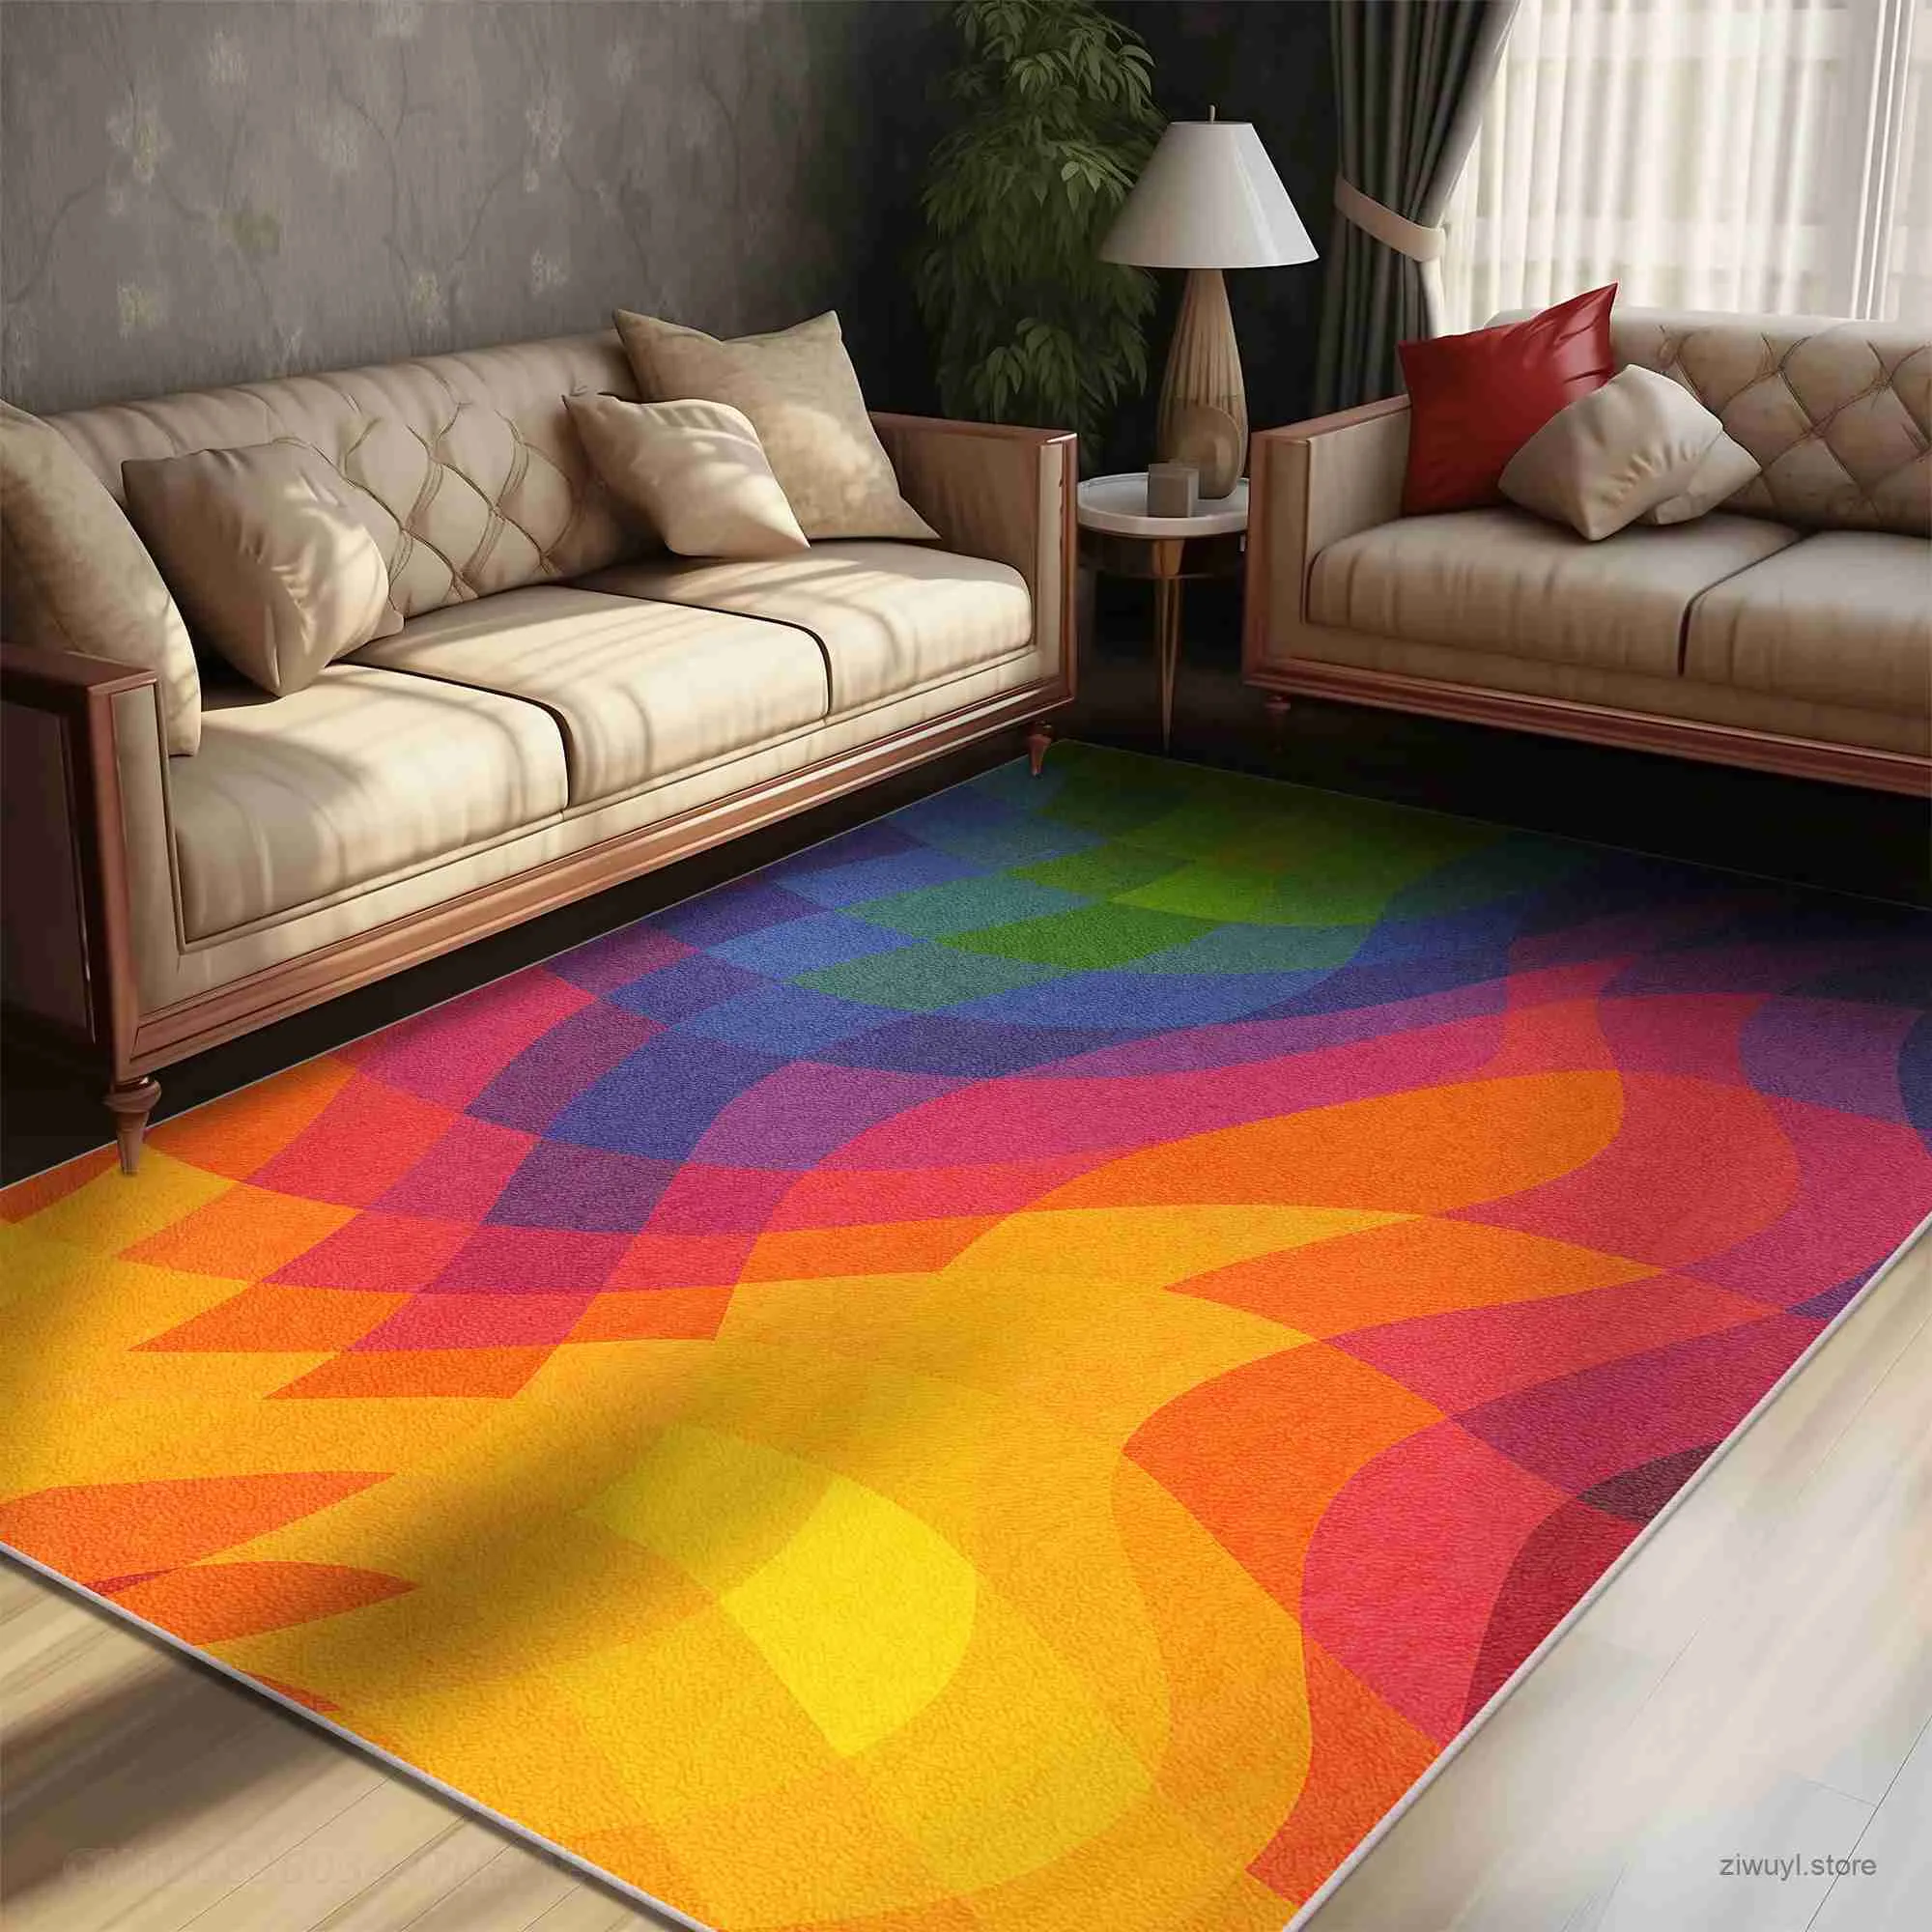 Carpets Bloc de couleur colorée tapis torsion artistique de salon créatif décoration Carpets confortable.